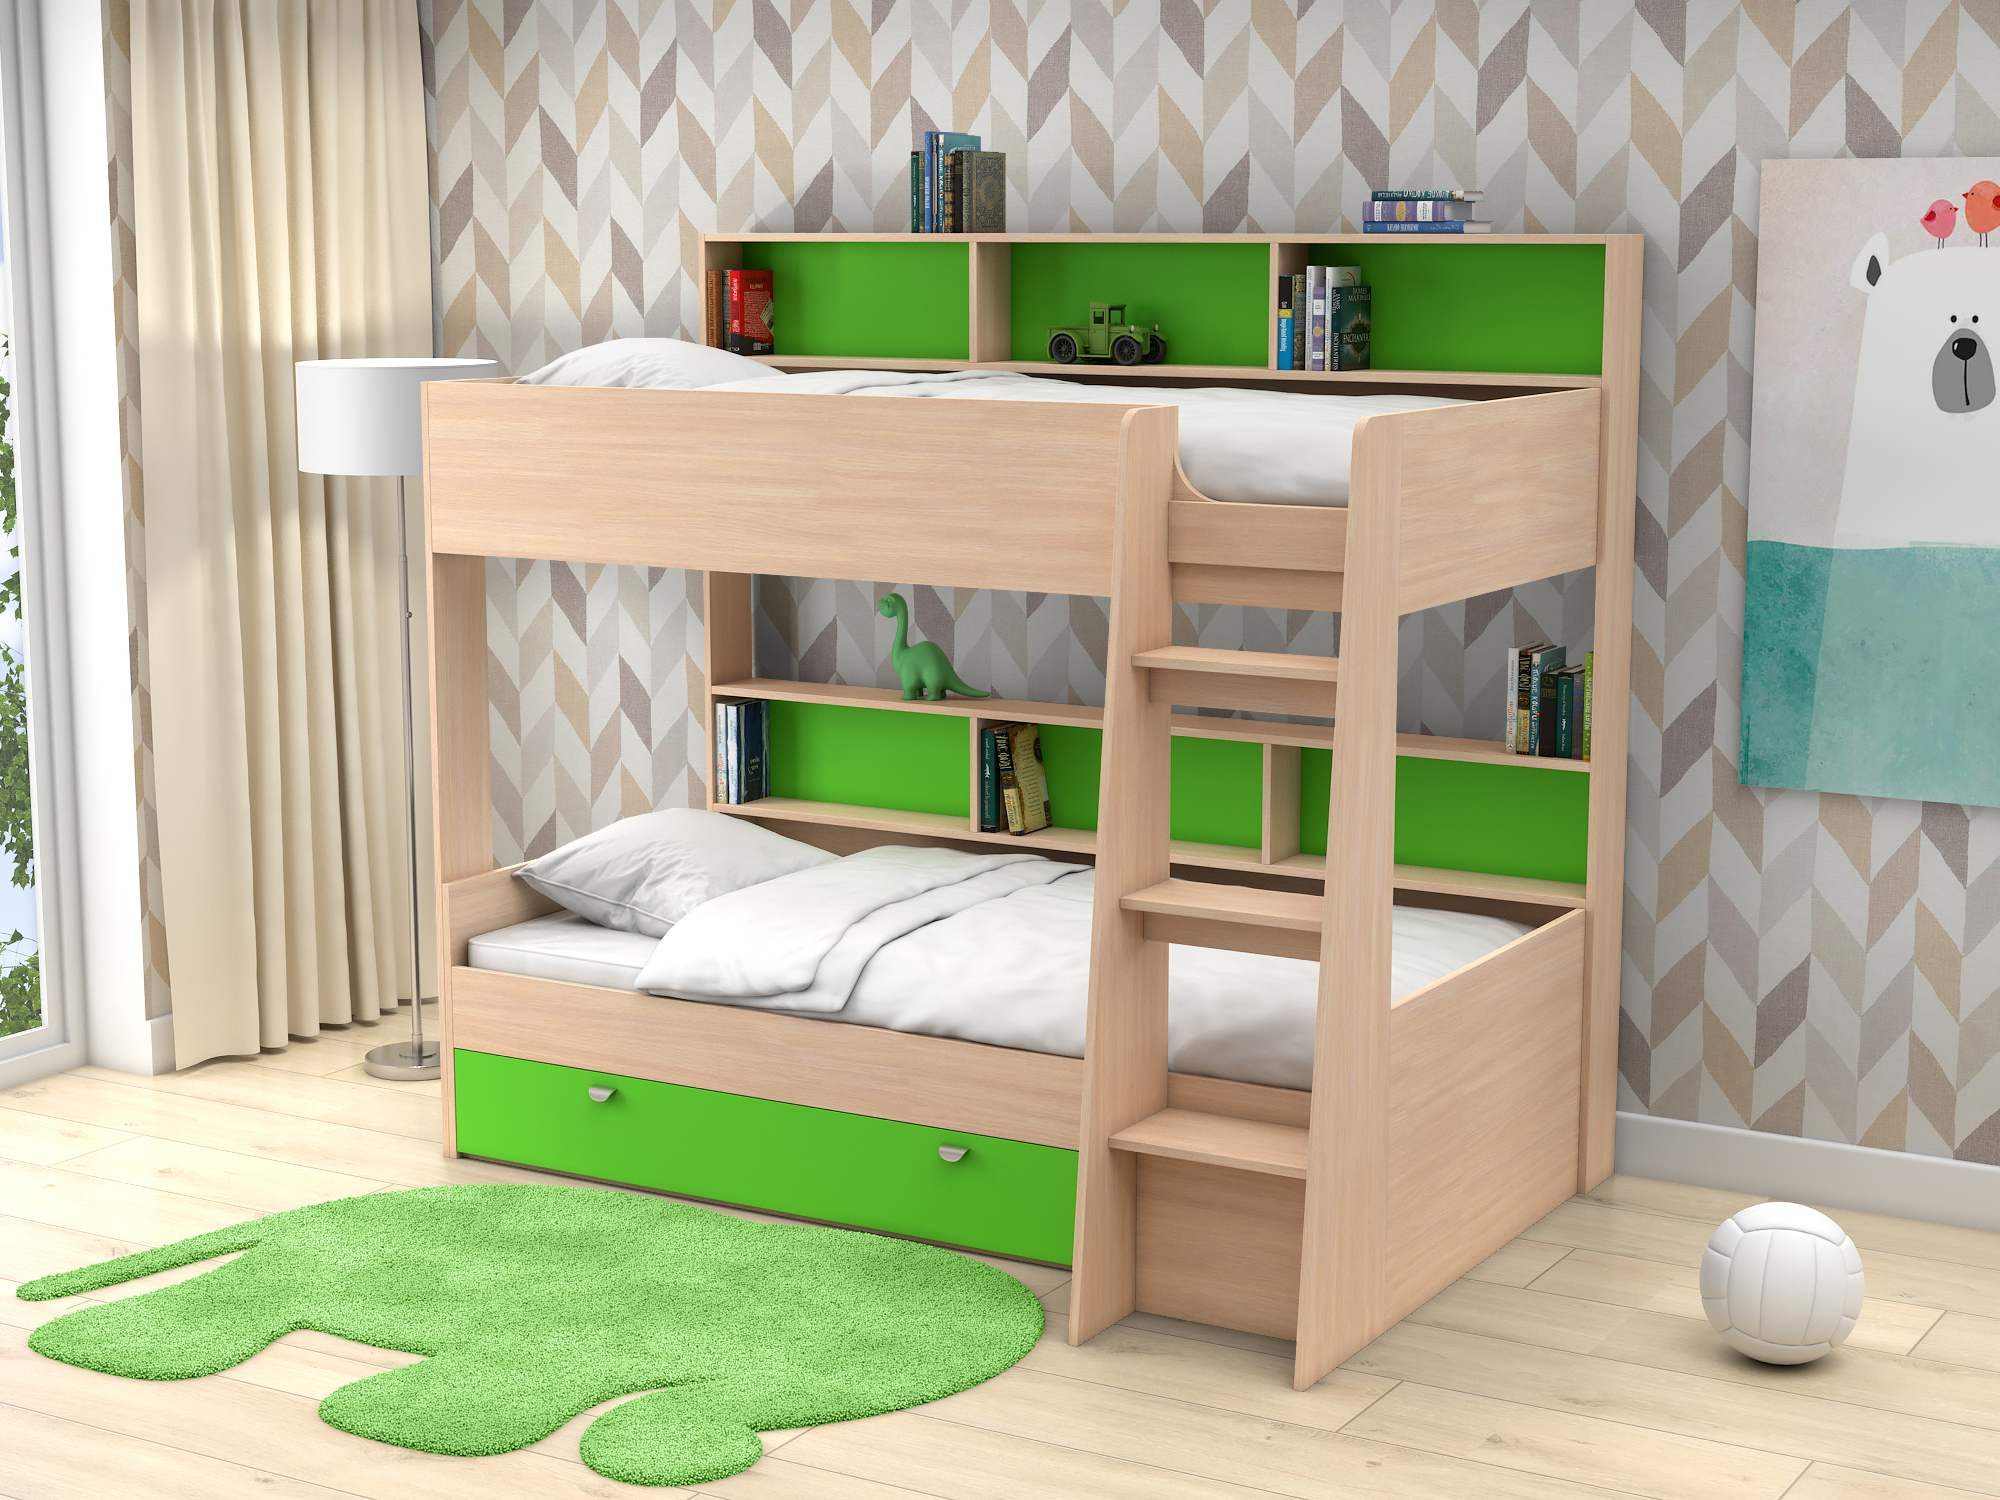 Двухъярусная кровать Golden Kids-1 (90х200) Зеленый, Белый, Бежевый, ЛДСП кровать двухъярусная ассоль плюс 90х200 ваниль бежевый мдф лдсп